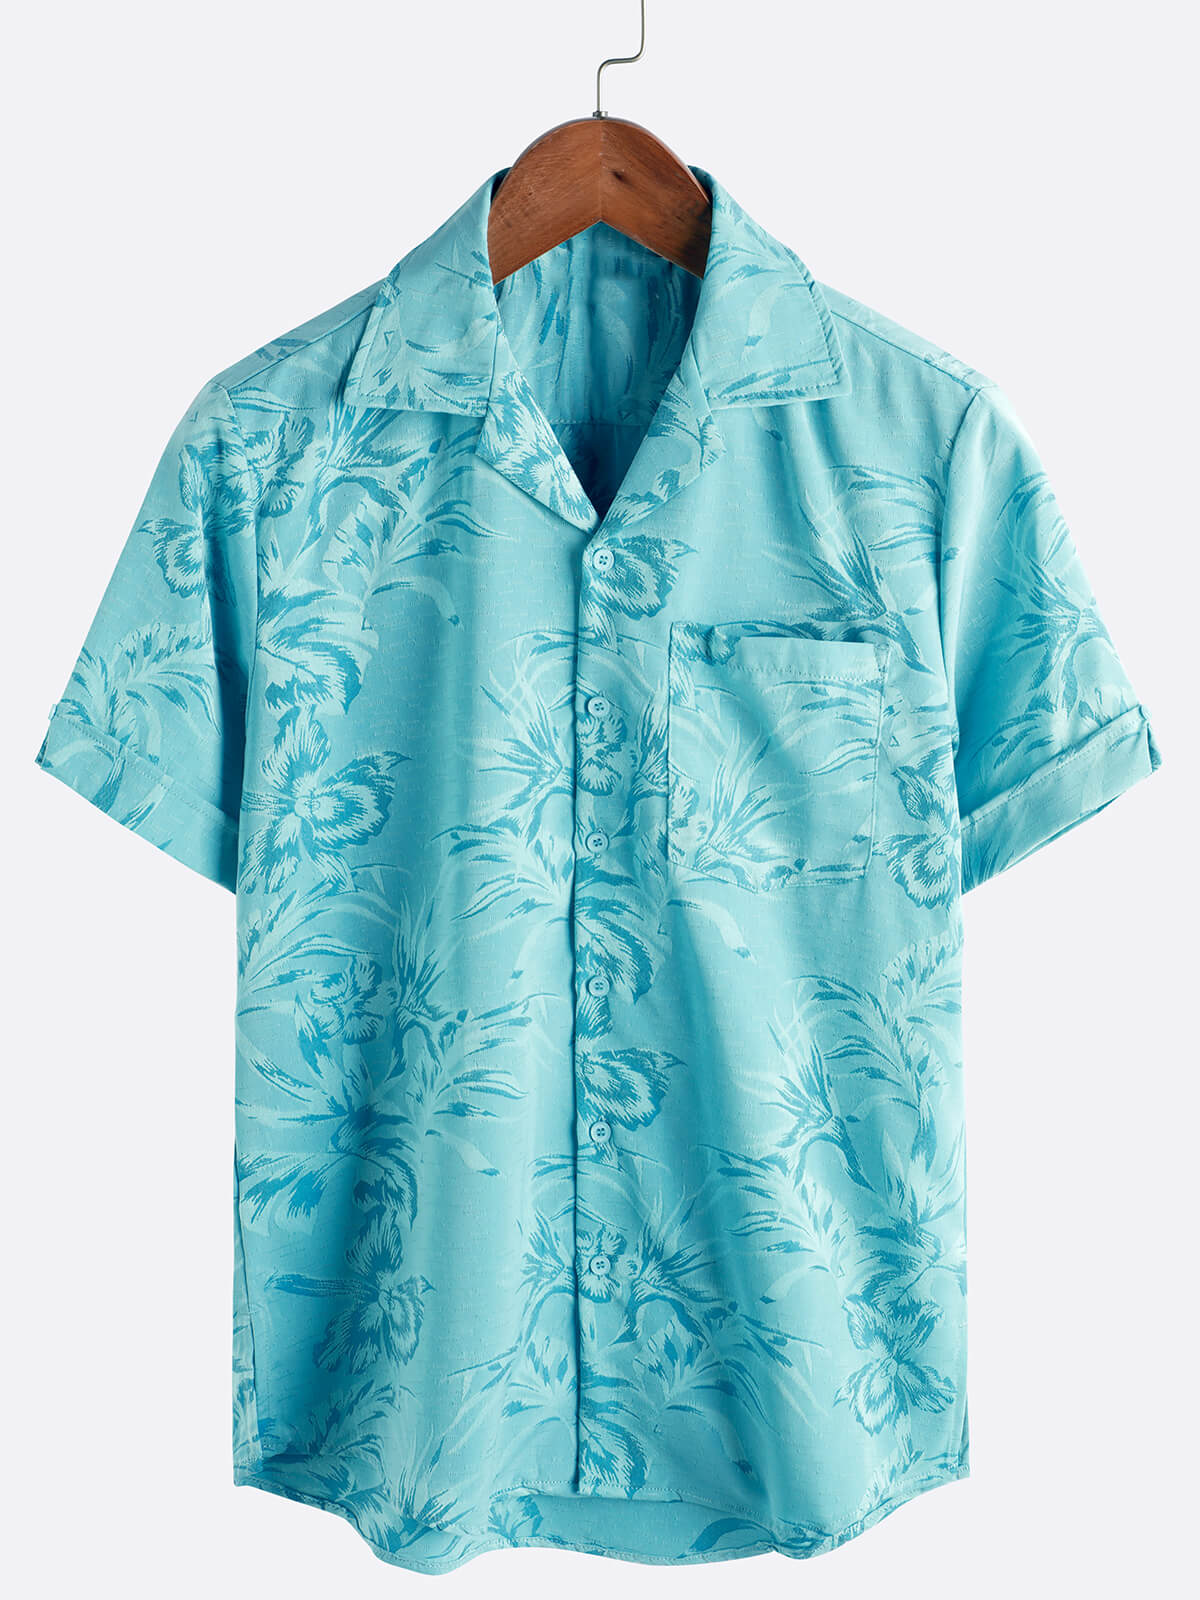 Men's Floral Pocket Jacquard Button Up Short Sleeve Summer Cuban Collar Camp Hawaiian Beach Shirt